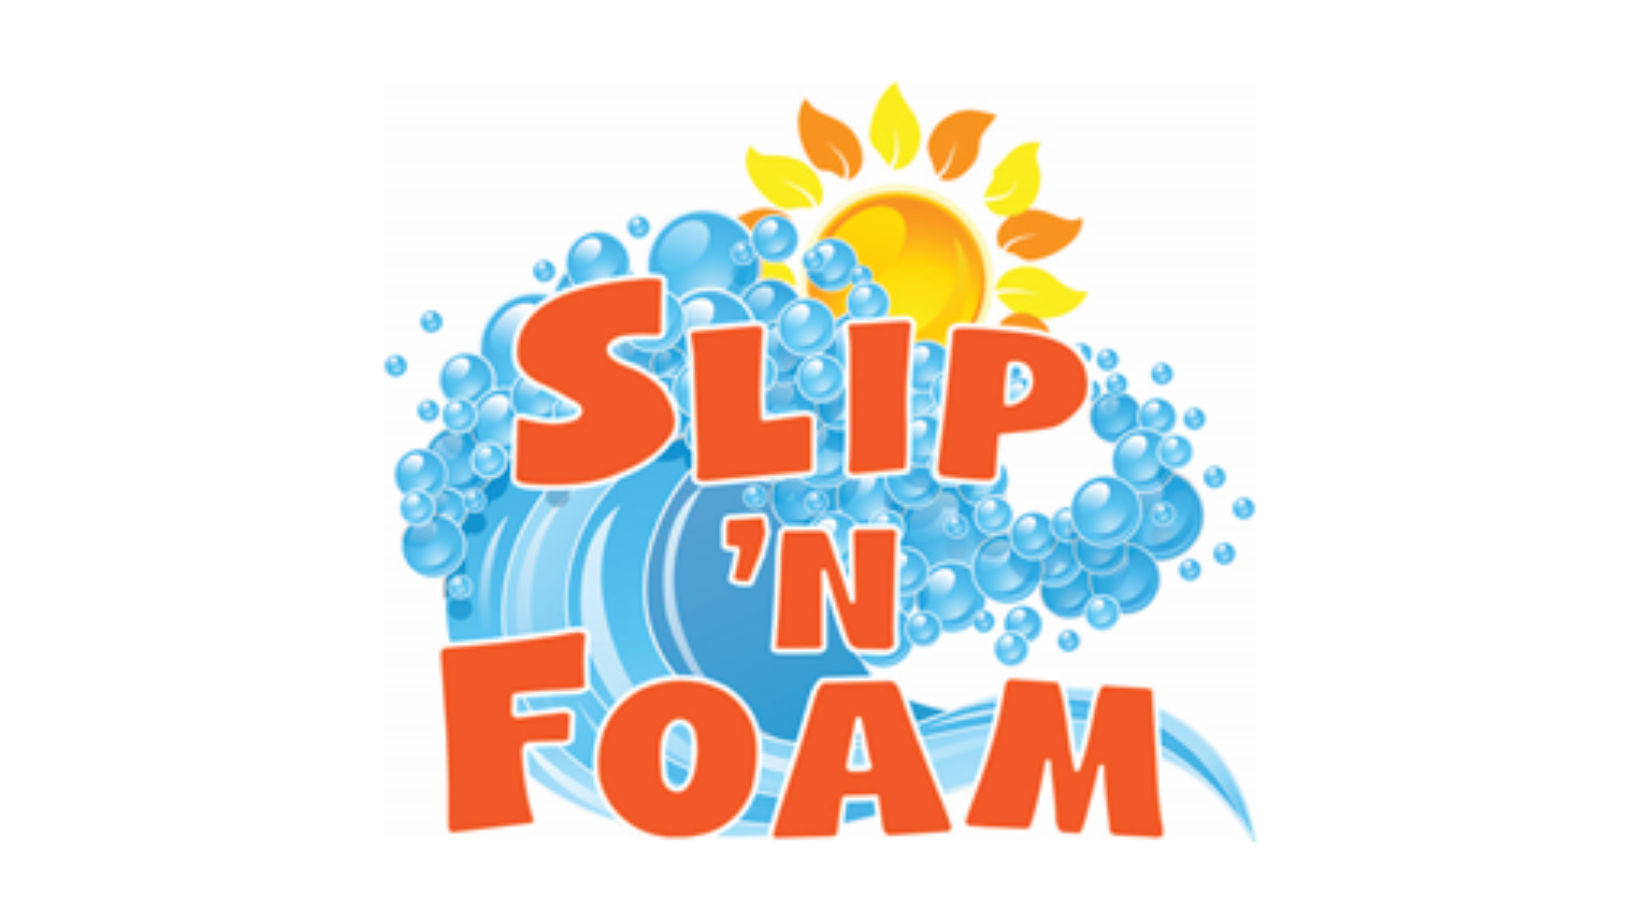 Slip 'n Foam Event